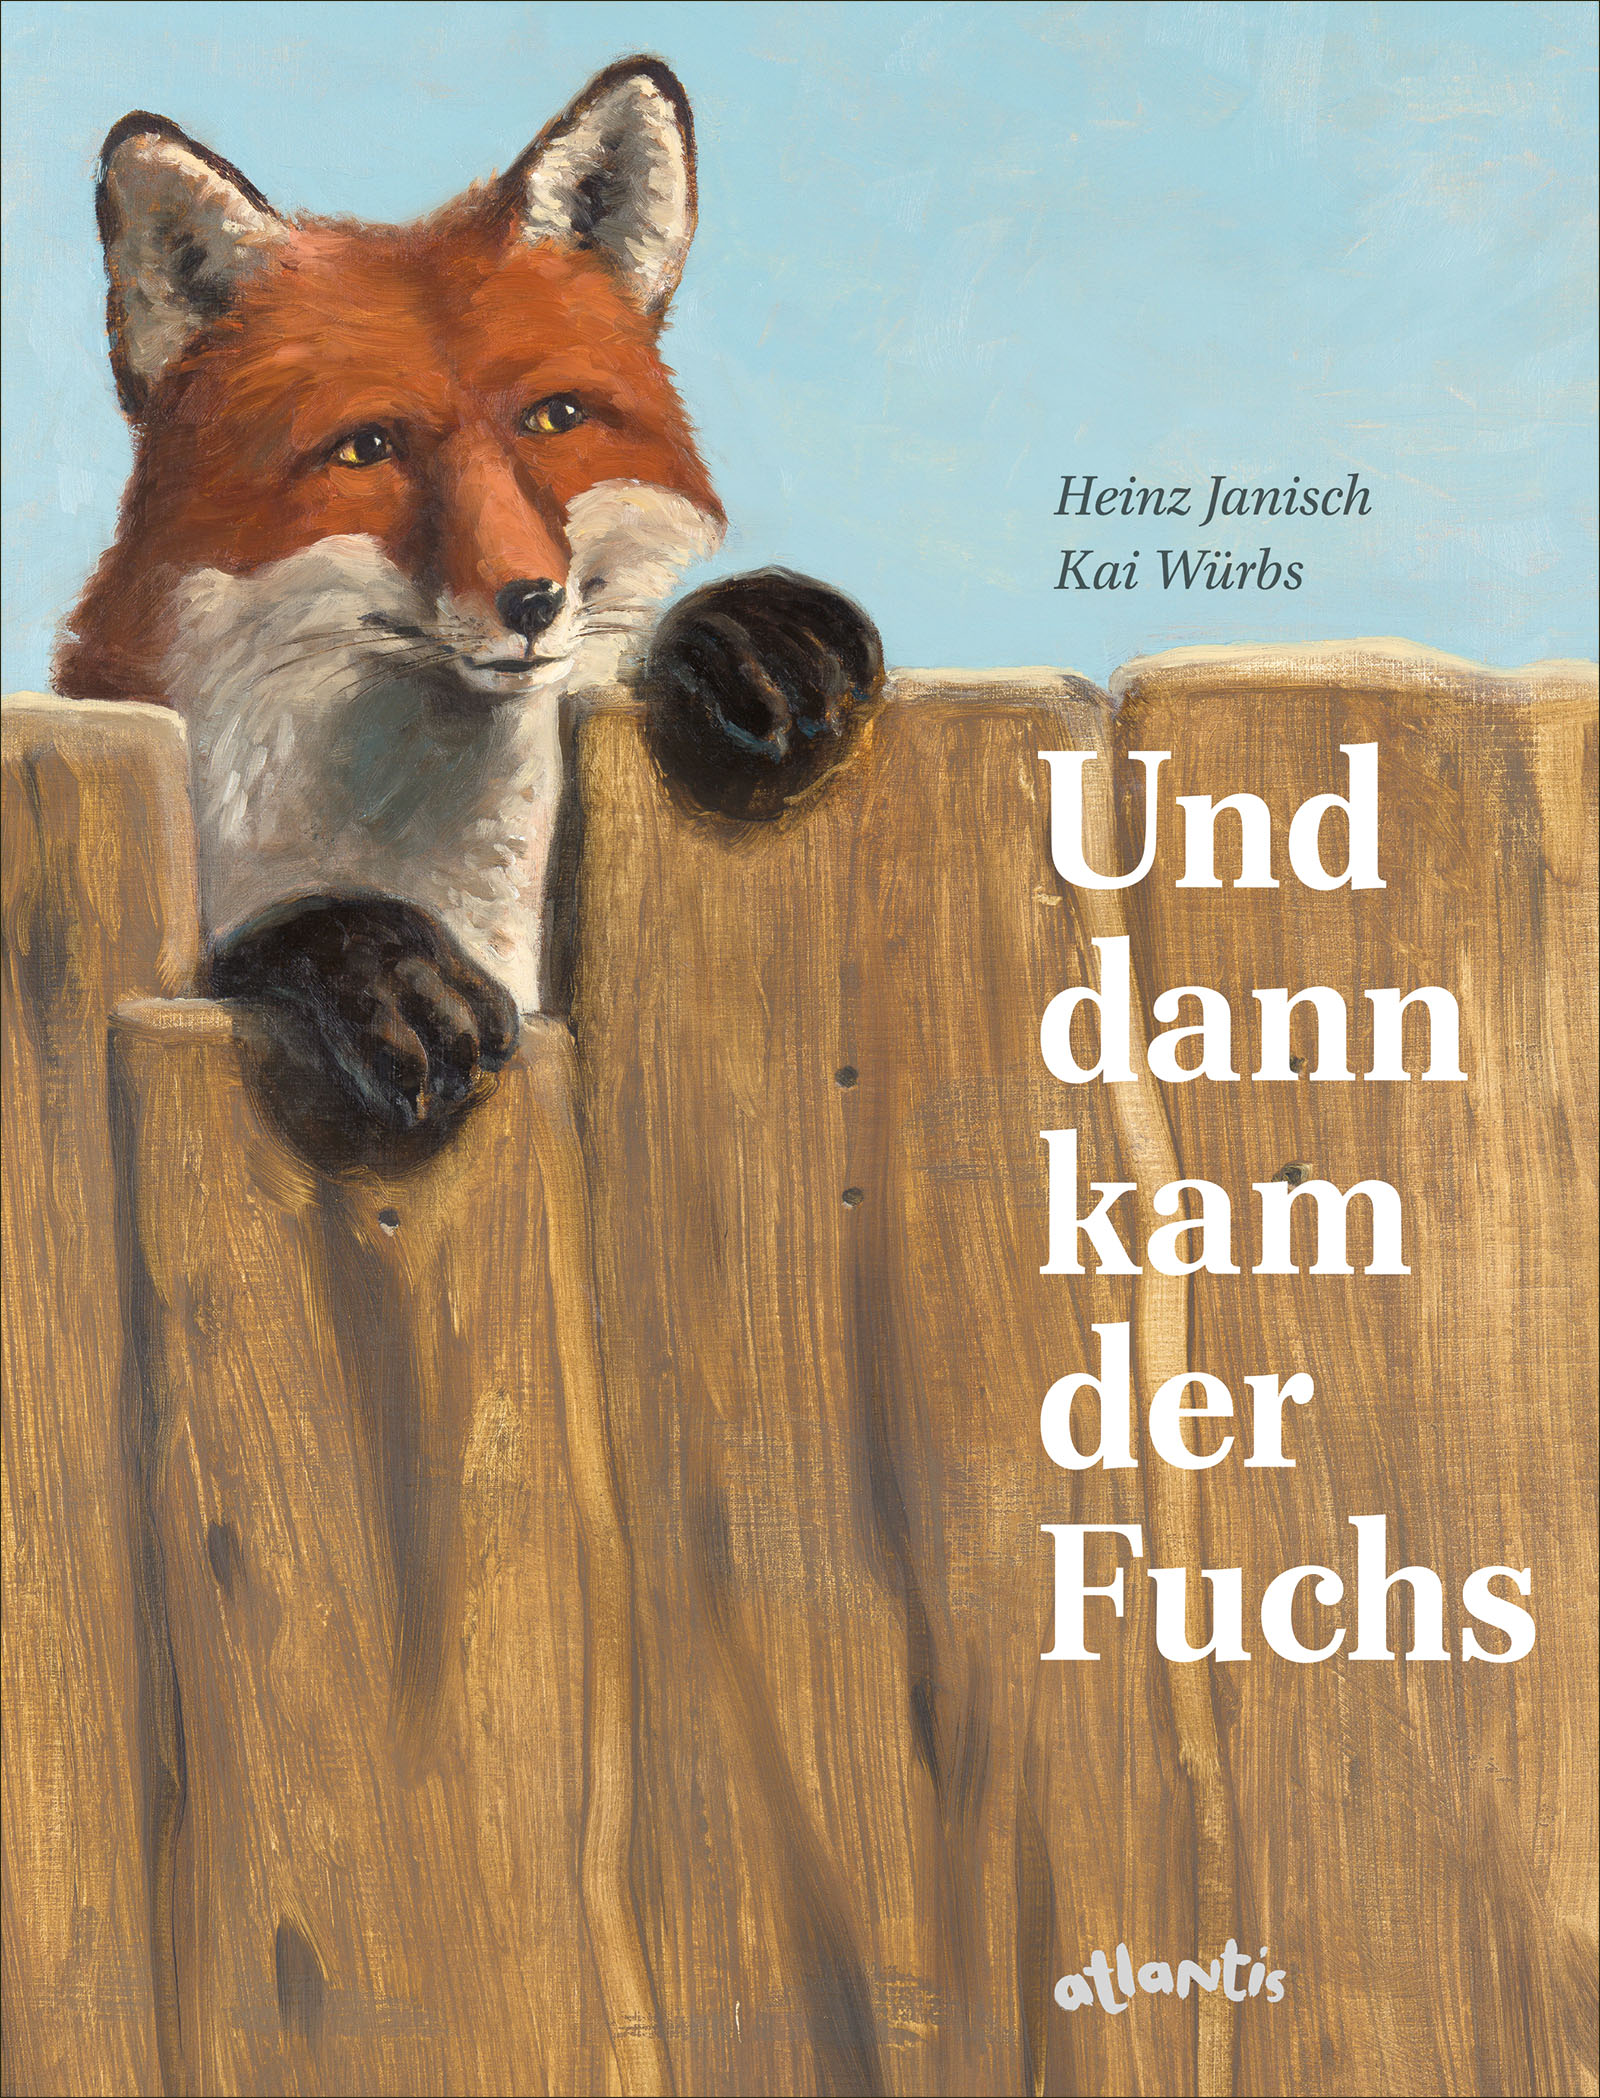 Buchcover "Und dann kam der Fuchs", Atlantis